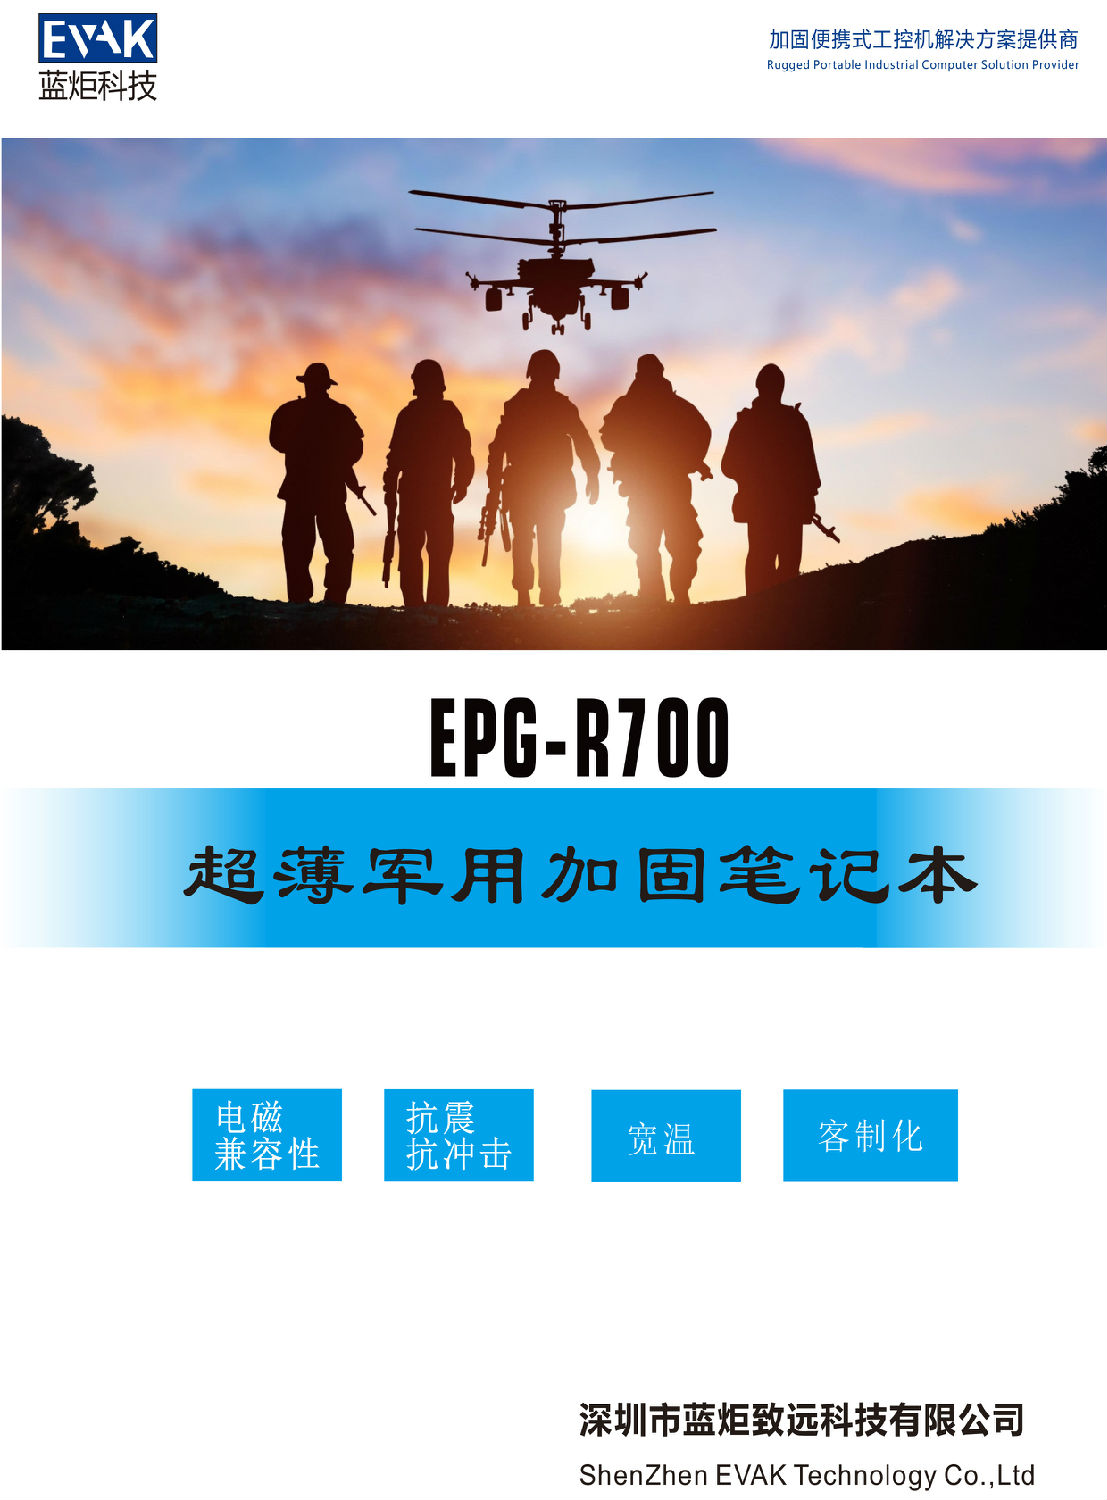 EPG-R700 超薄军用加固笔记本-1.jpg